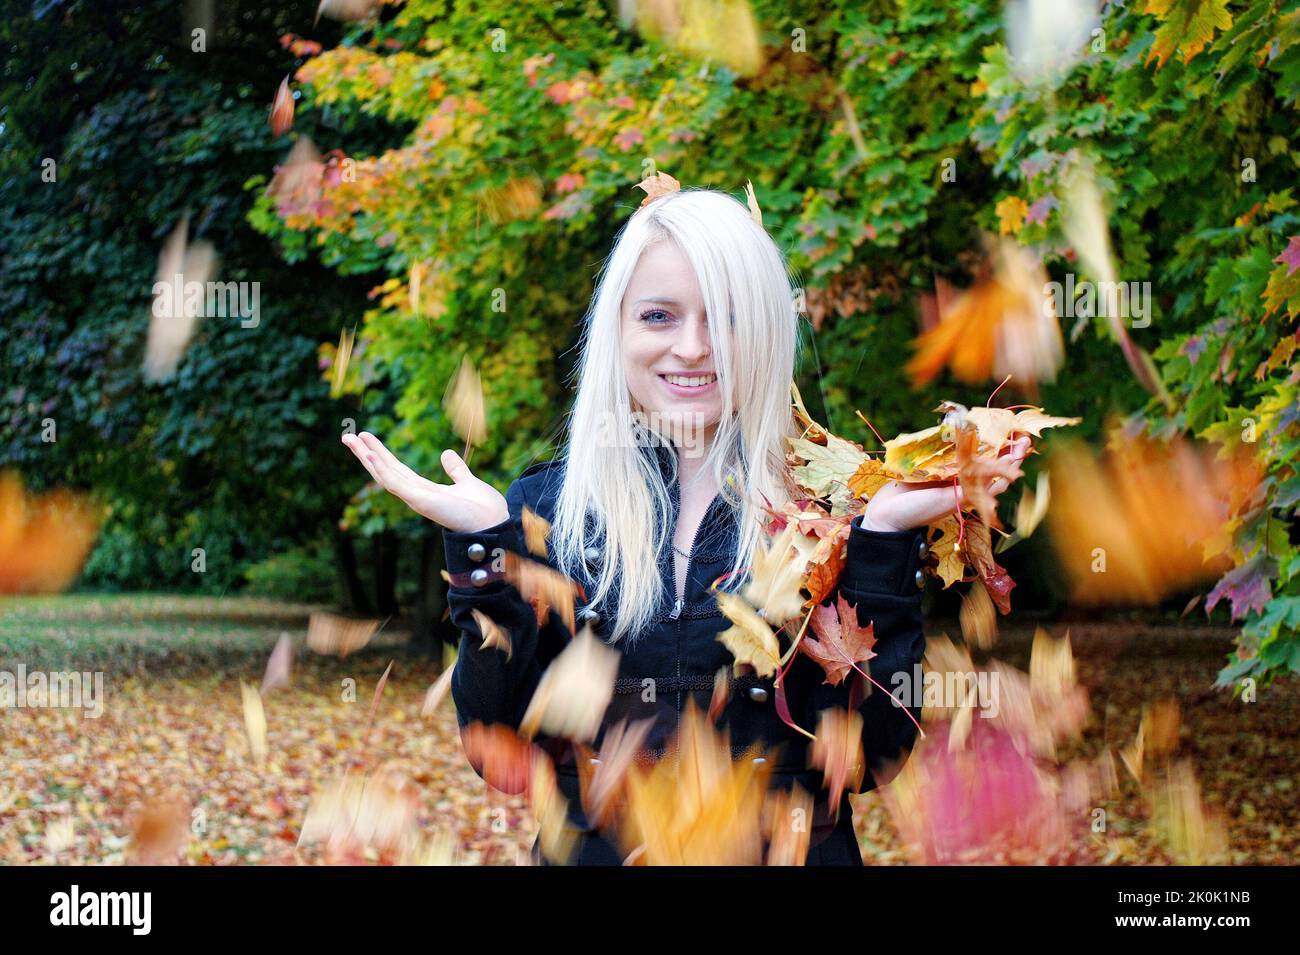 Der herbstliche Herbst macht Spaß in einem Park mit einer blonden Frau Stockfoto